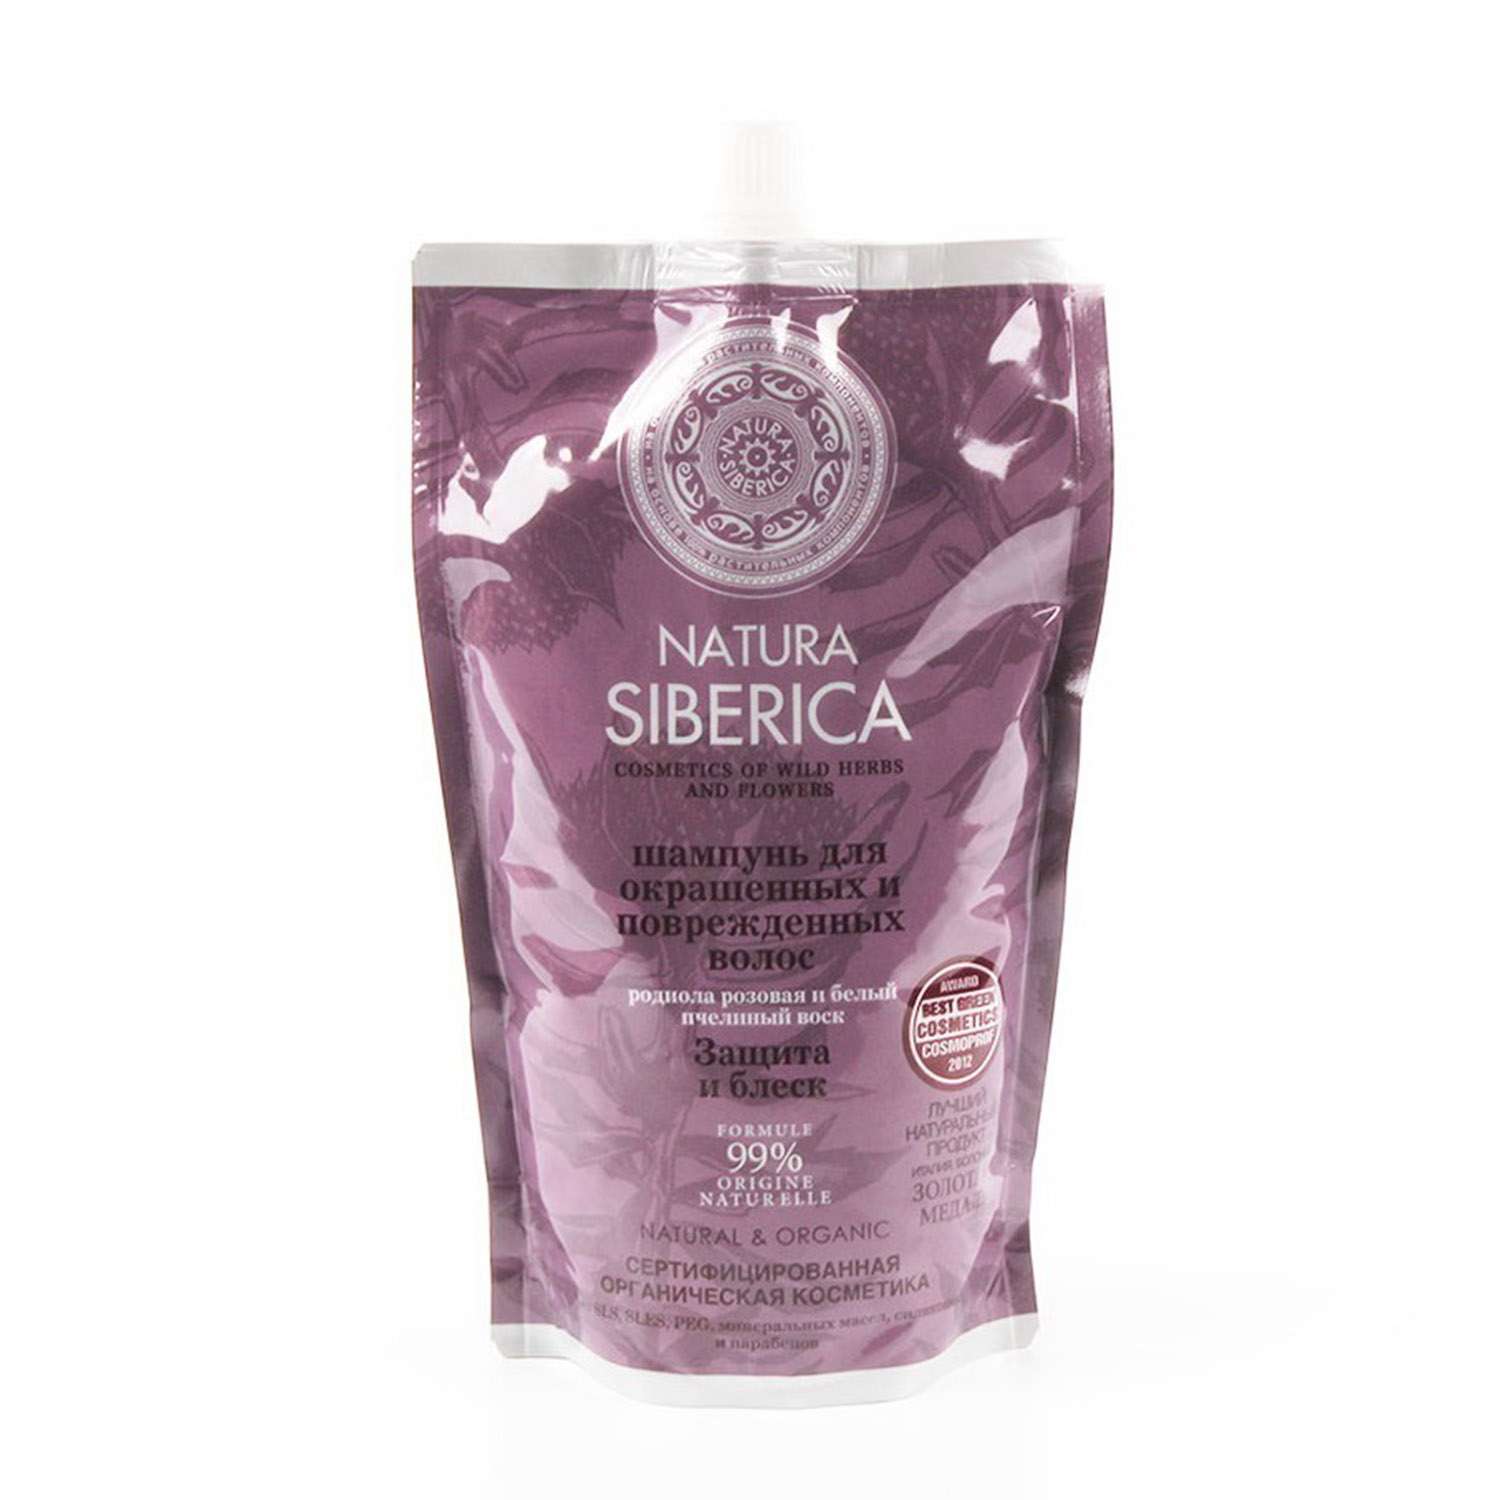 Шампунь Natura Siberica для окрашенных волос Защита и блеск Дой-пак 500 мл - фото 1